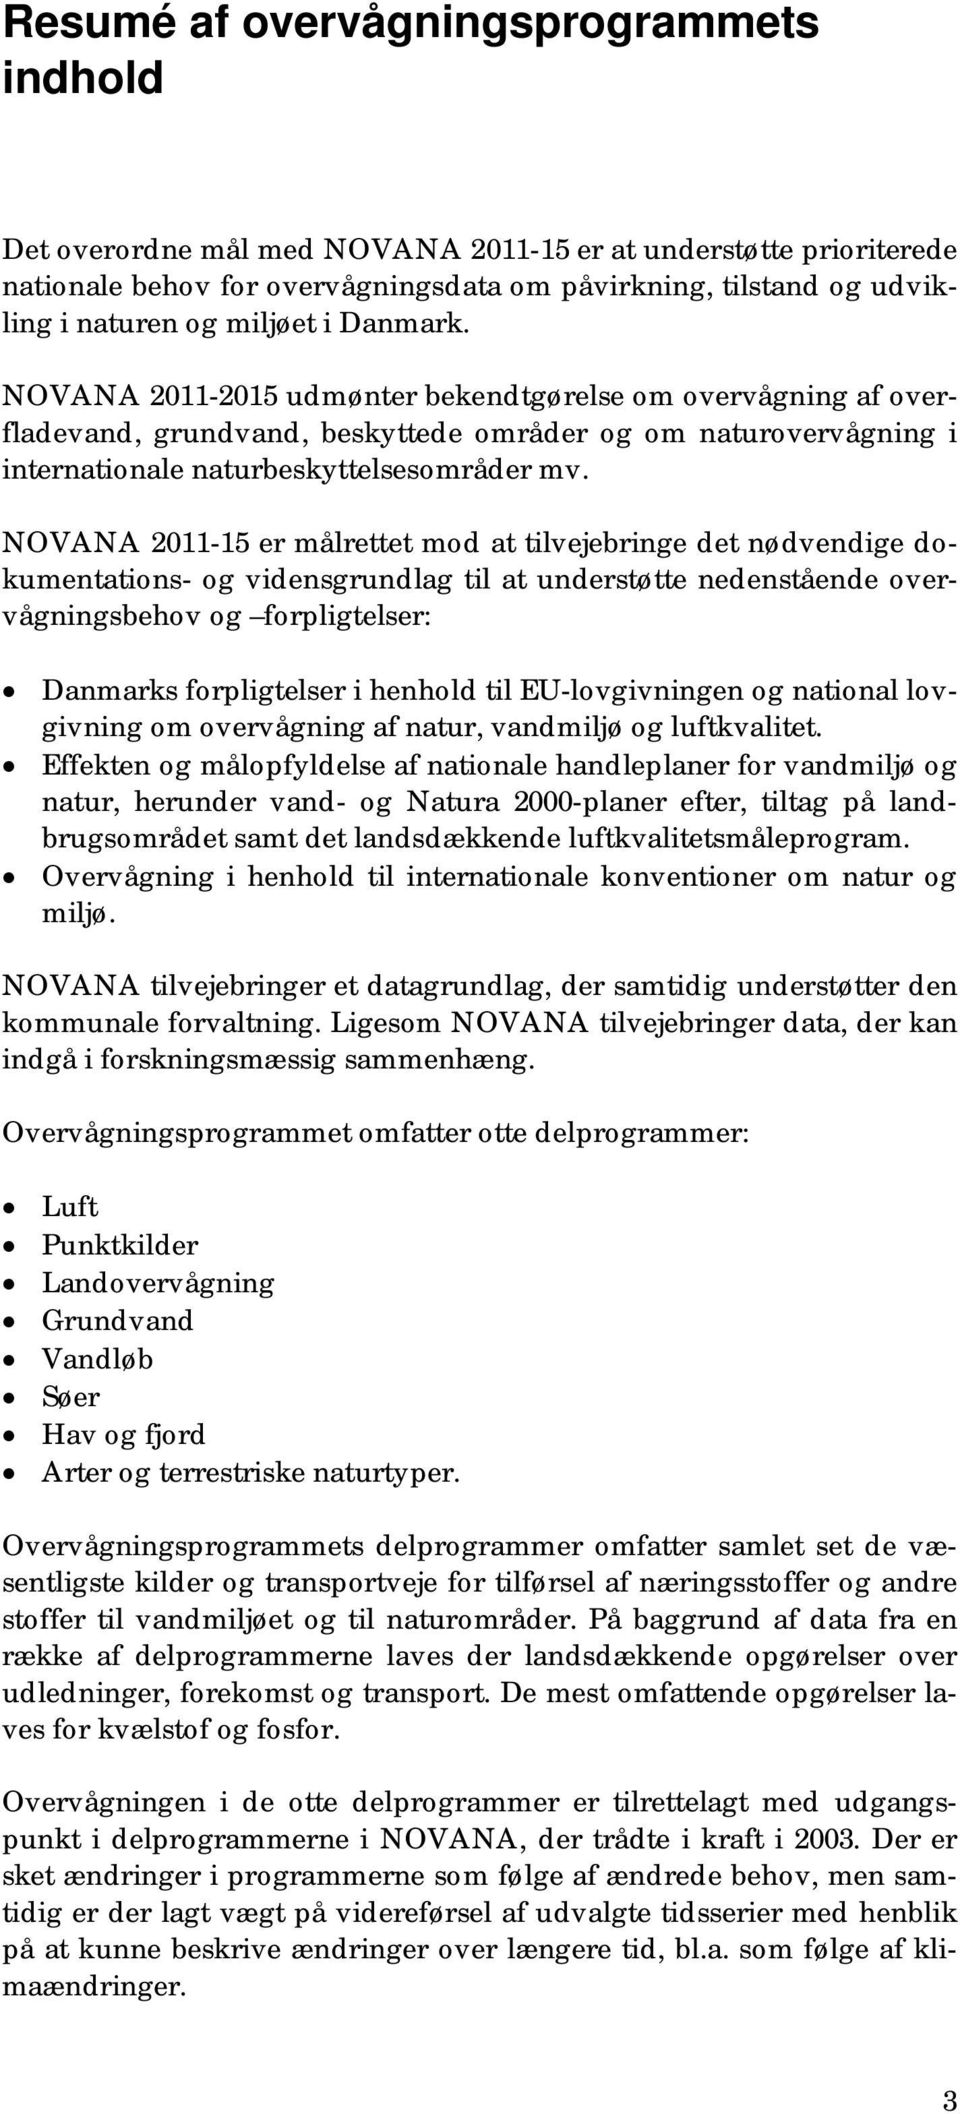 NOVANA 2011-15 er målrettet mod at tilvejebringe det nødvendige dokumentations- og vidensgrundlag til at understøtte nedenstående overvågningsbehov og forpligtelser: Danmarks forpligtelser i henhold